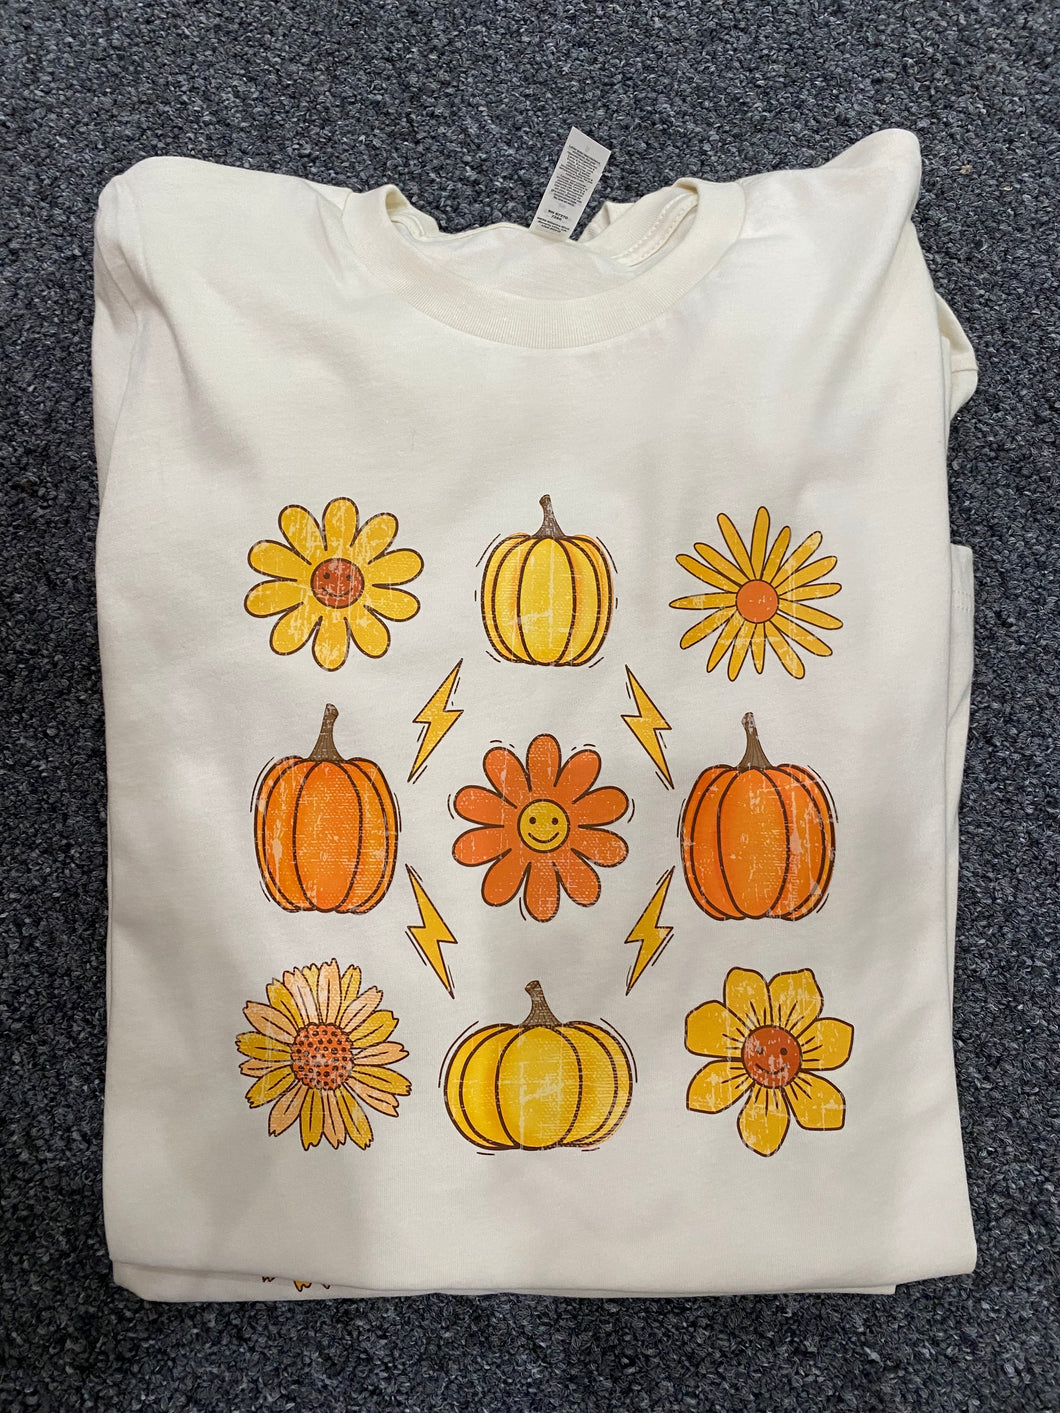 Daisies Sunflowers & Pumpkins -Shirt